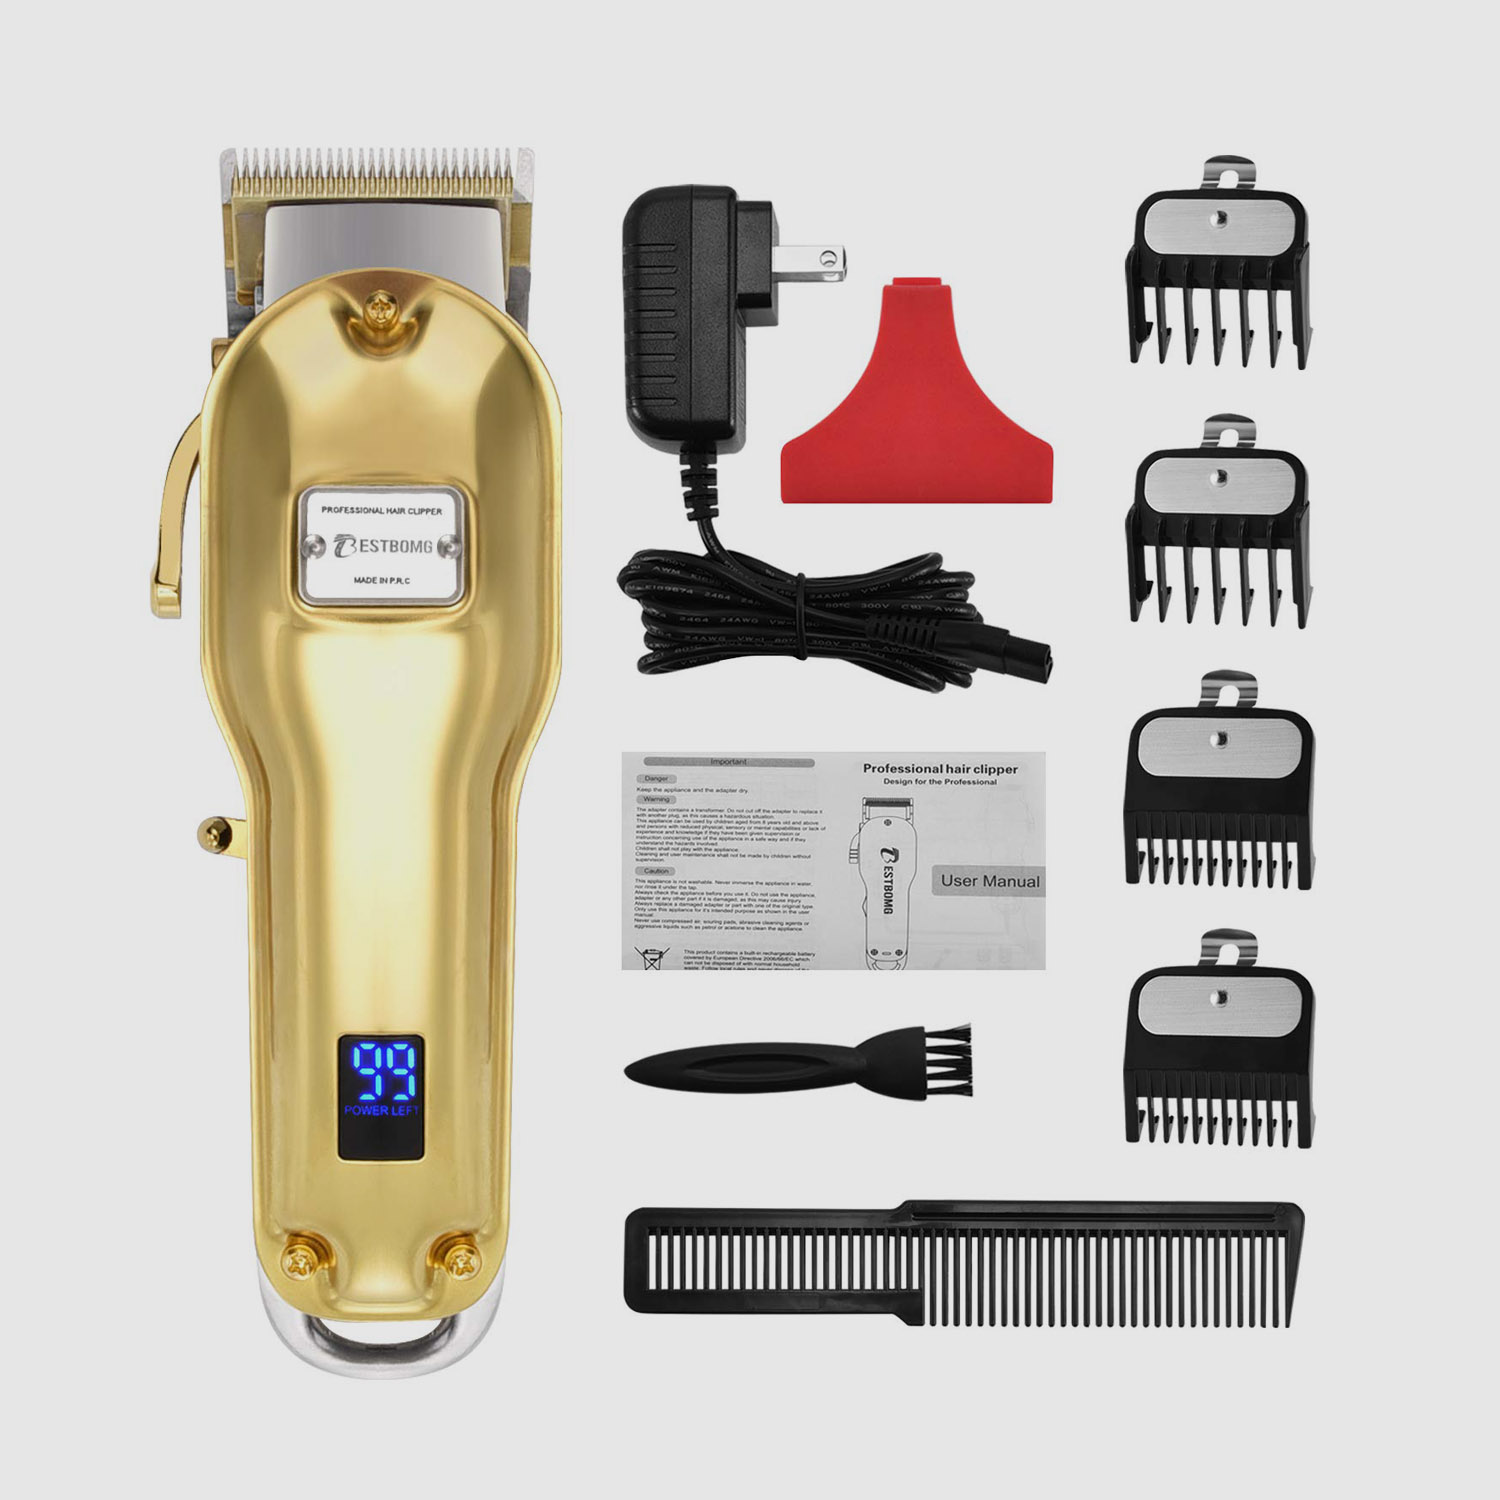 Ipakita ang Professional Cordless Haircut Kit LED